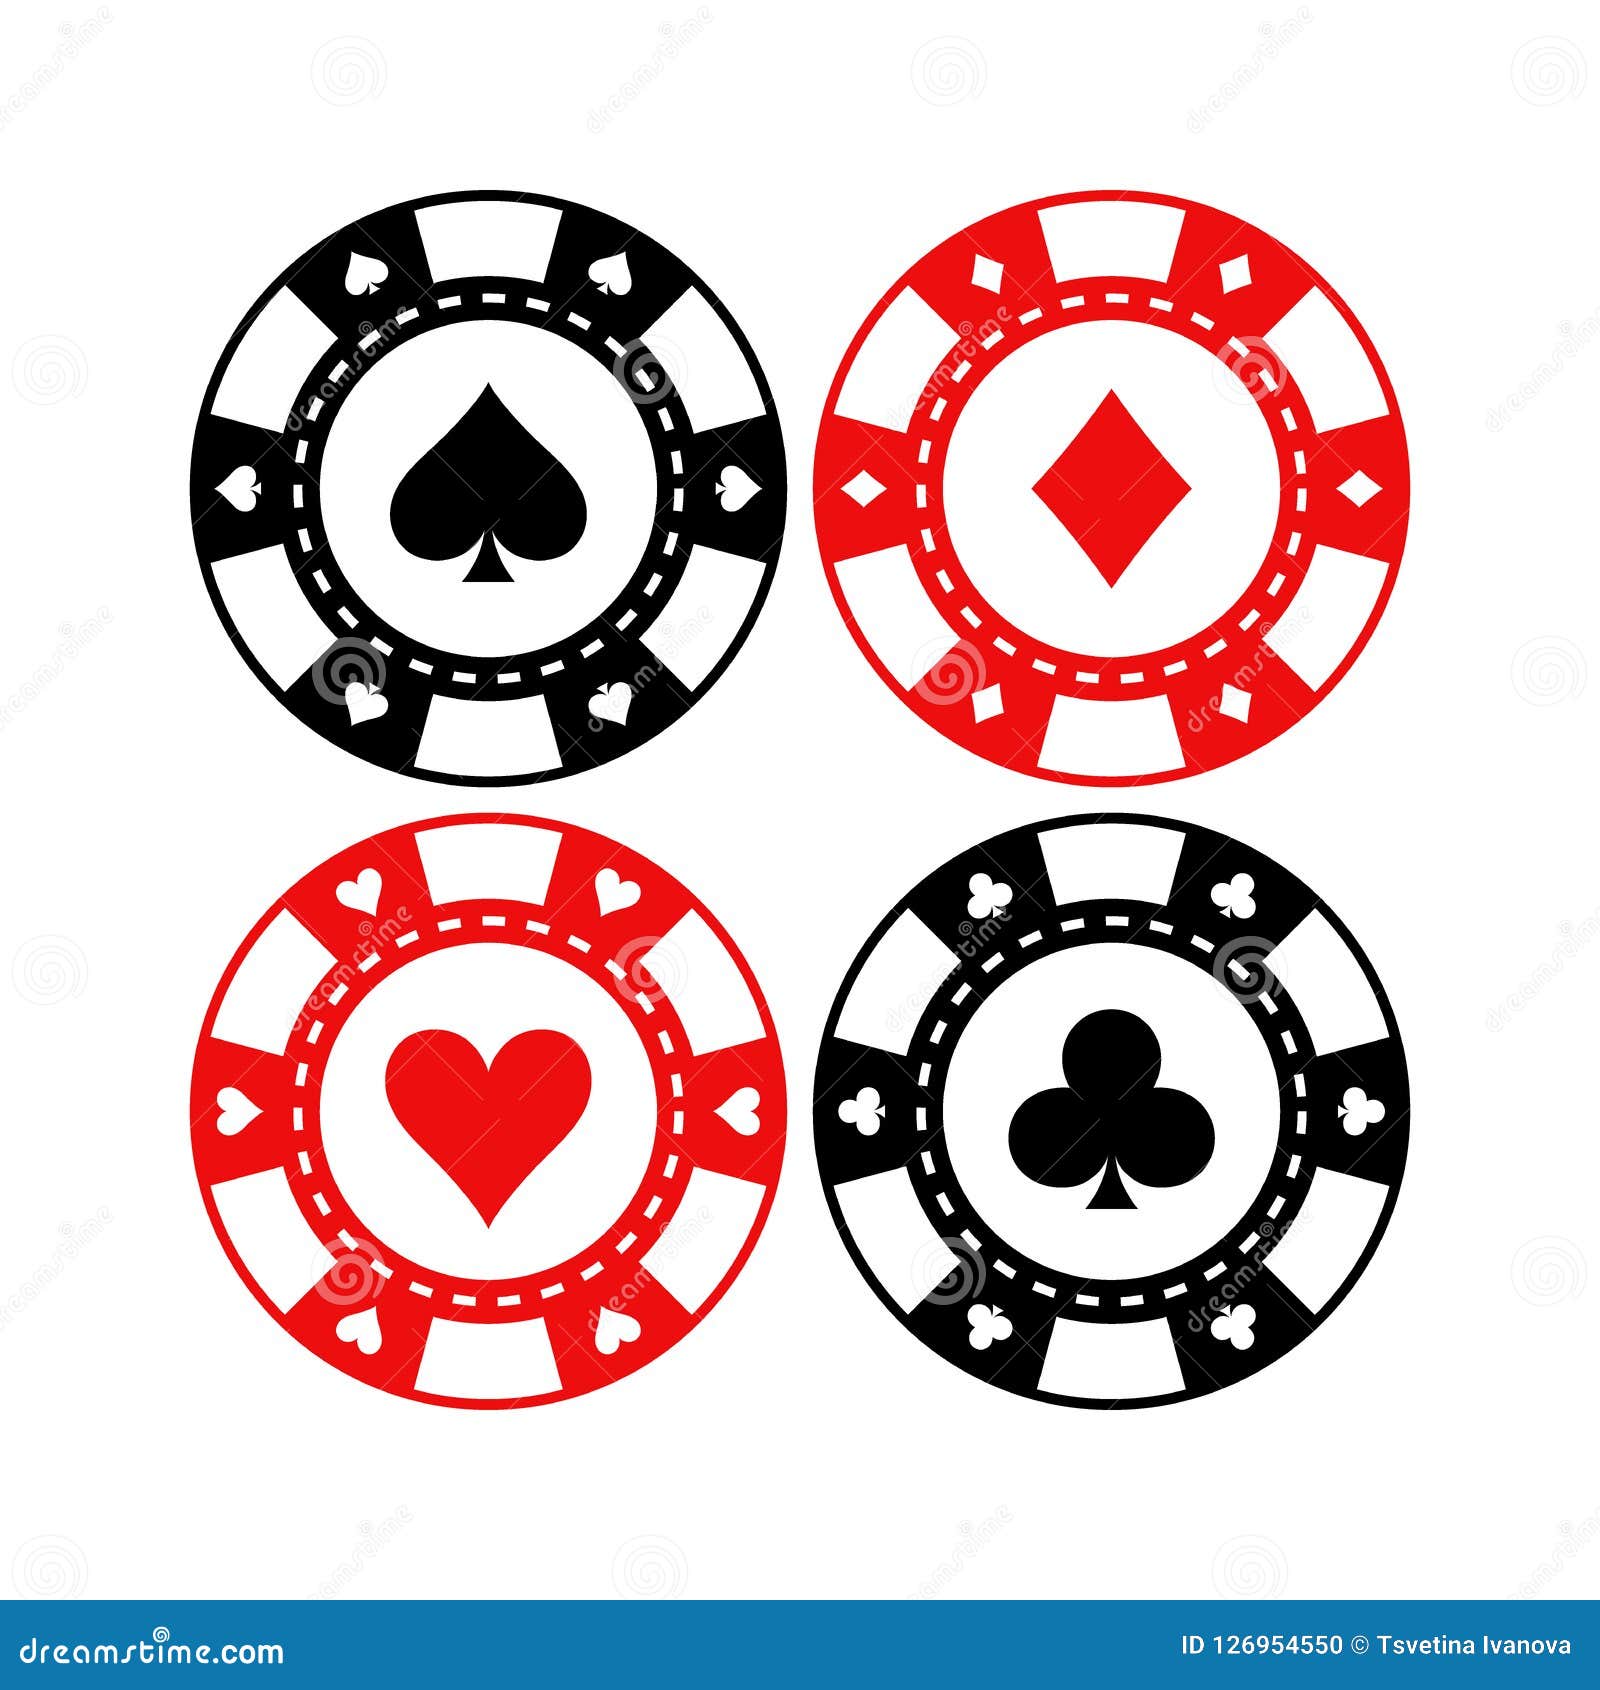 Poker betting online - 9968